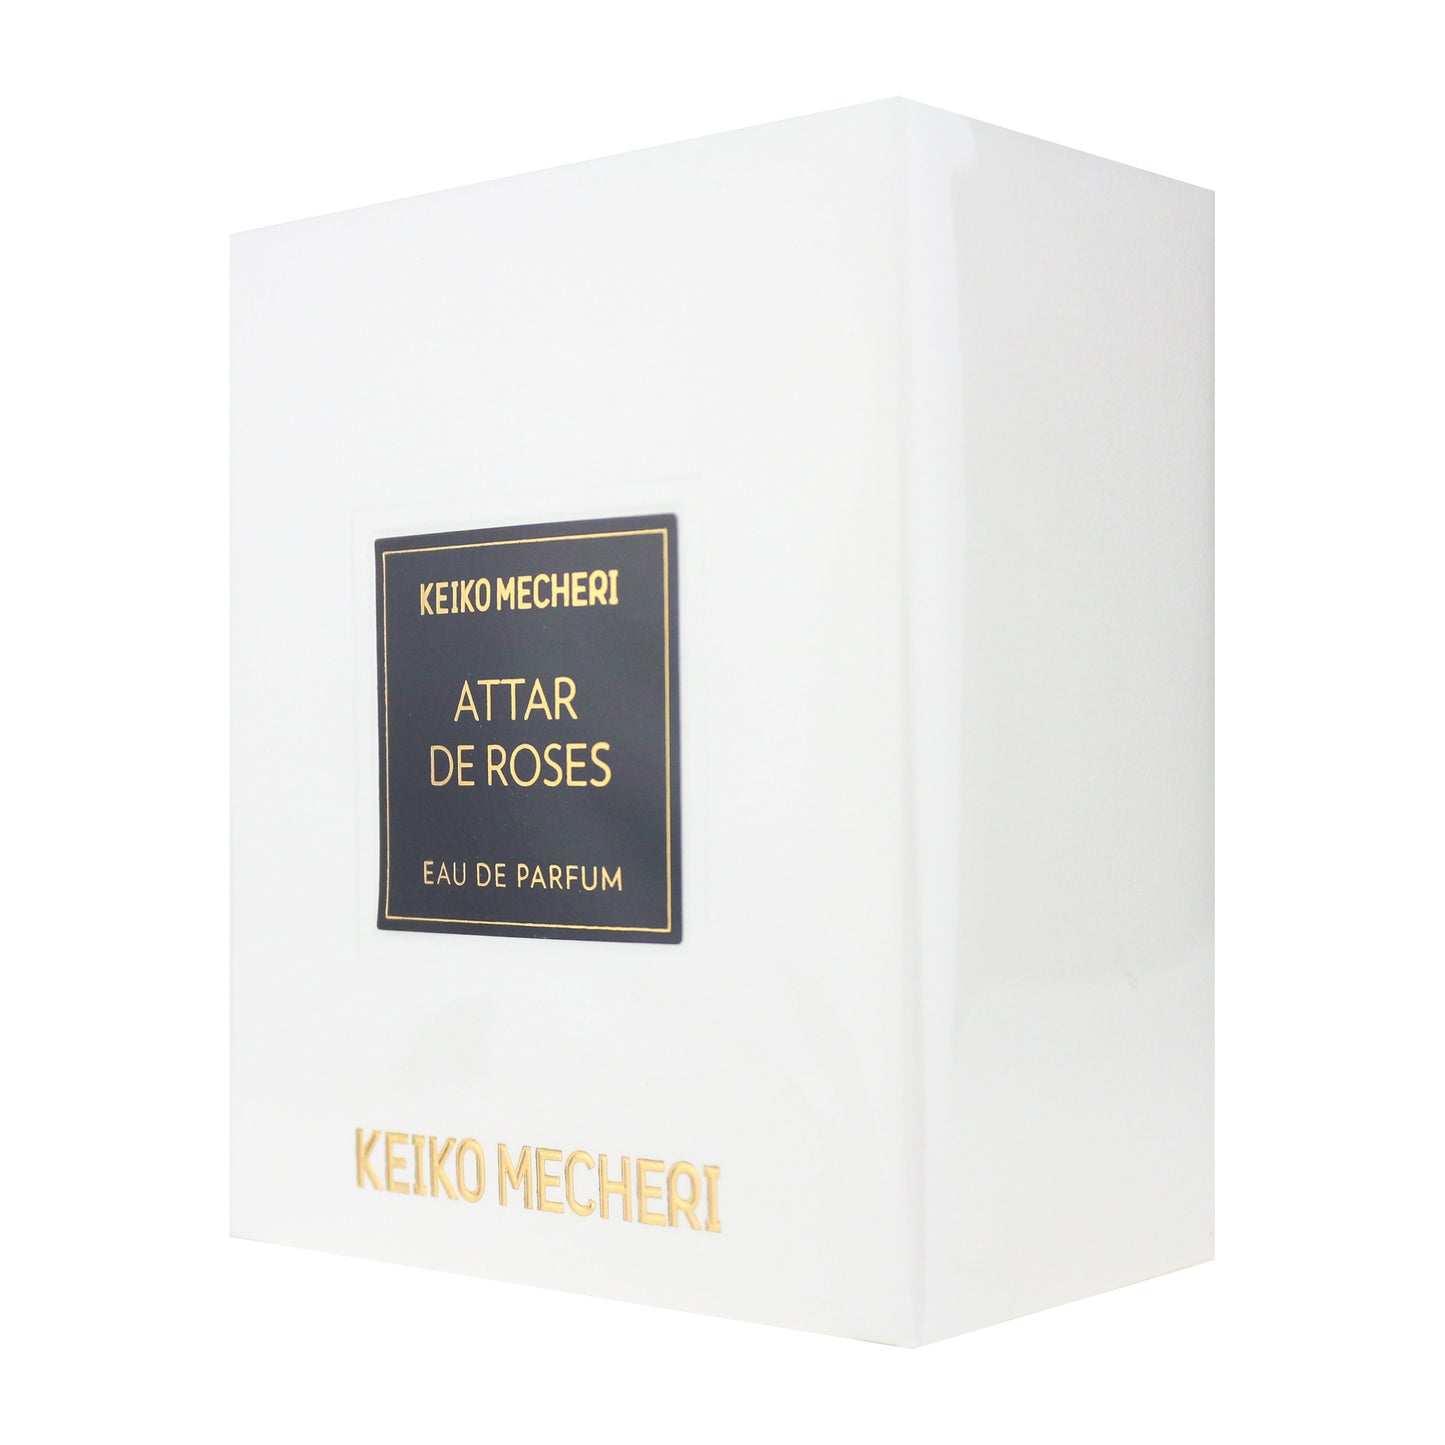 Keiko Mecheri 'Attar De Roses' Eau De Parfum 2.5oz/75ml New In Box